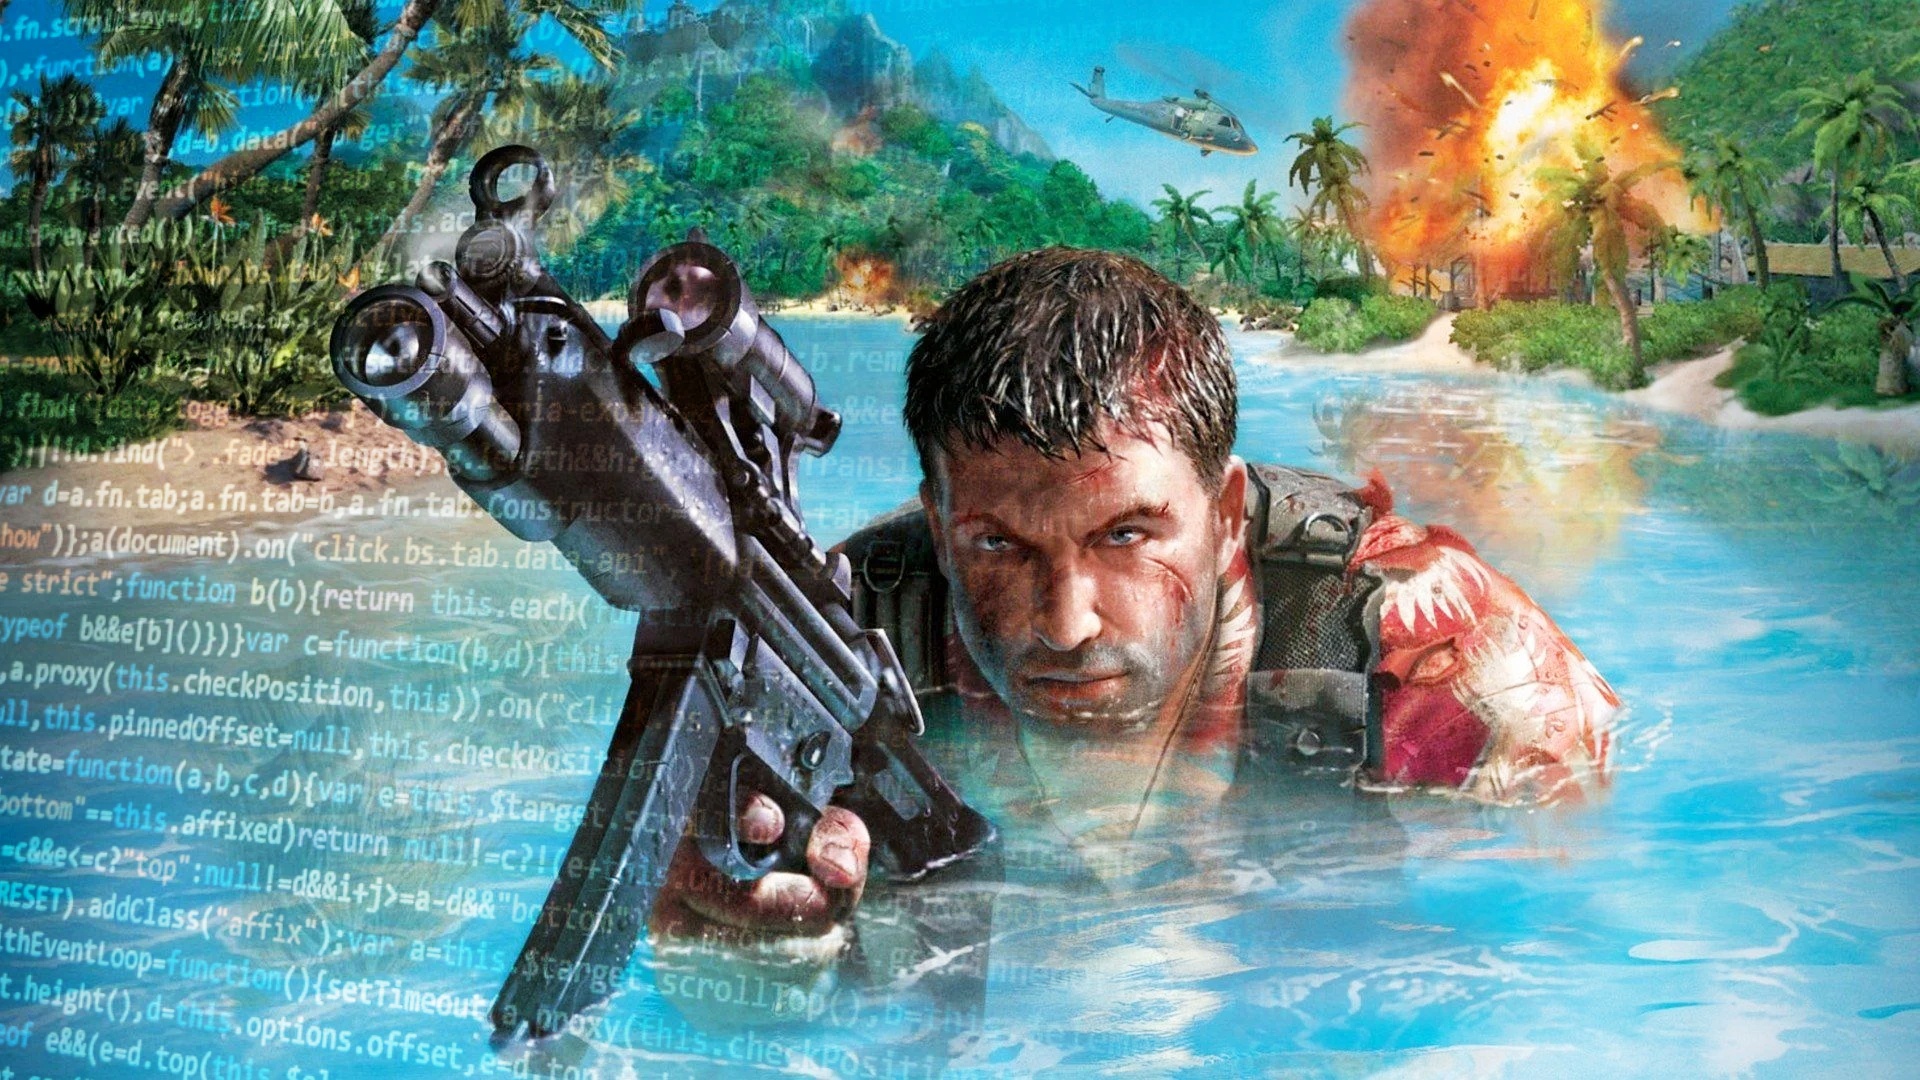 #Far Cry prägte vor 19 Jahren das Shooter-Genre, ist jetzt durch Leak plötzlich wieder im Fokus